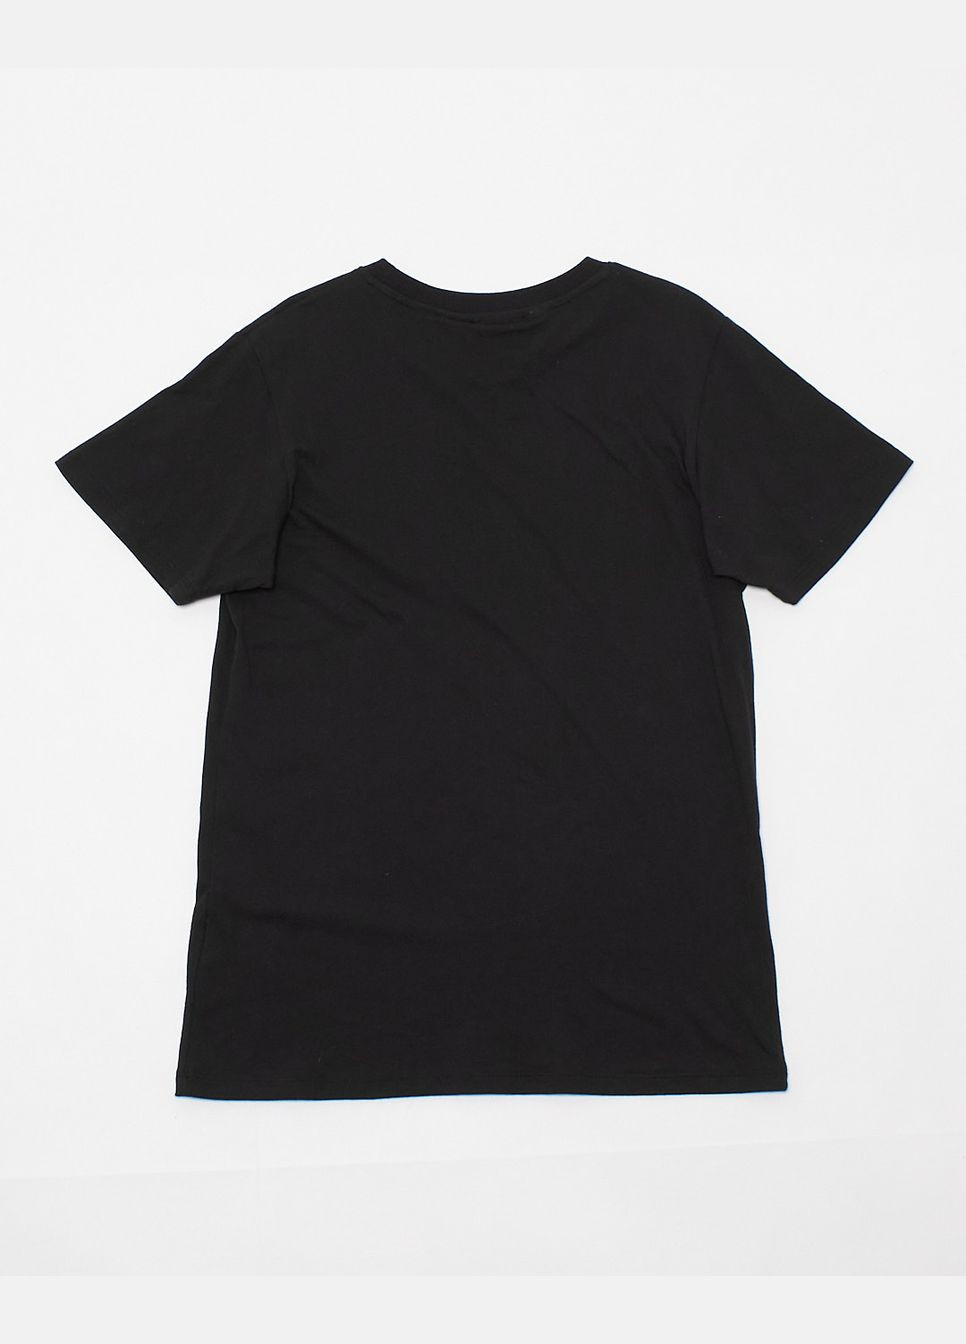 Чорна футболка basic,чорний з принтом, Wesc